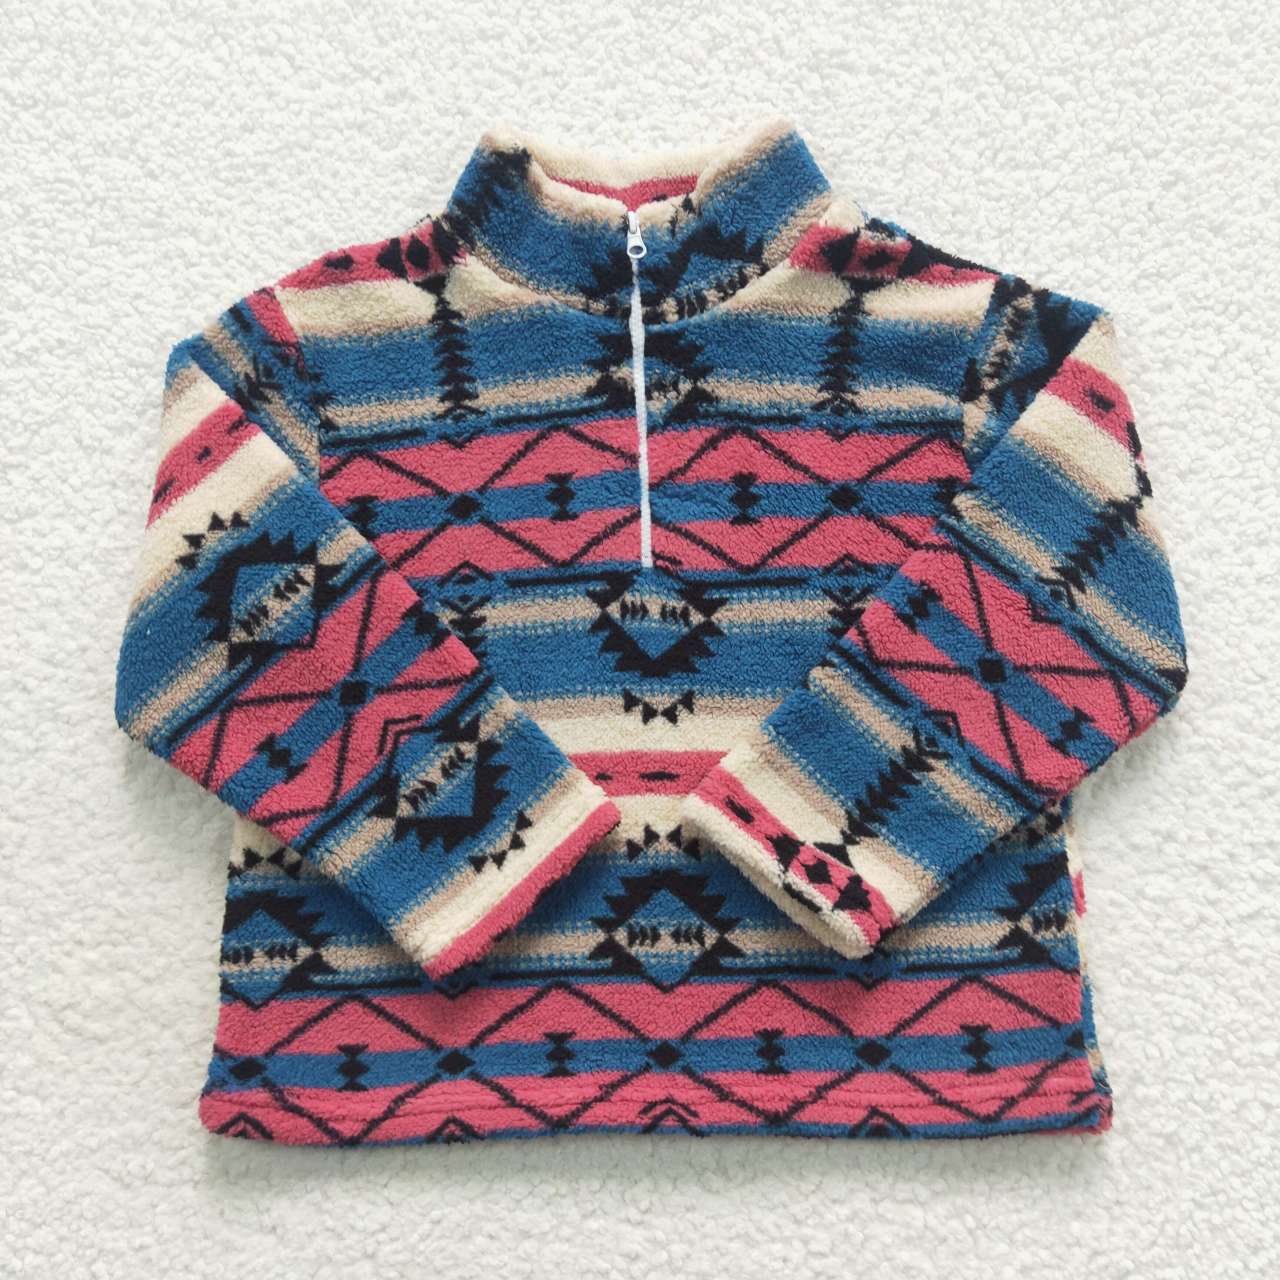 BT0353 aztec geometric blue pink beige zip up fleece jacket long sleeve top